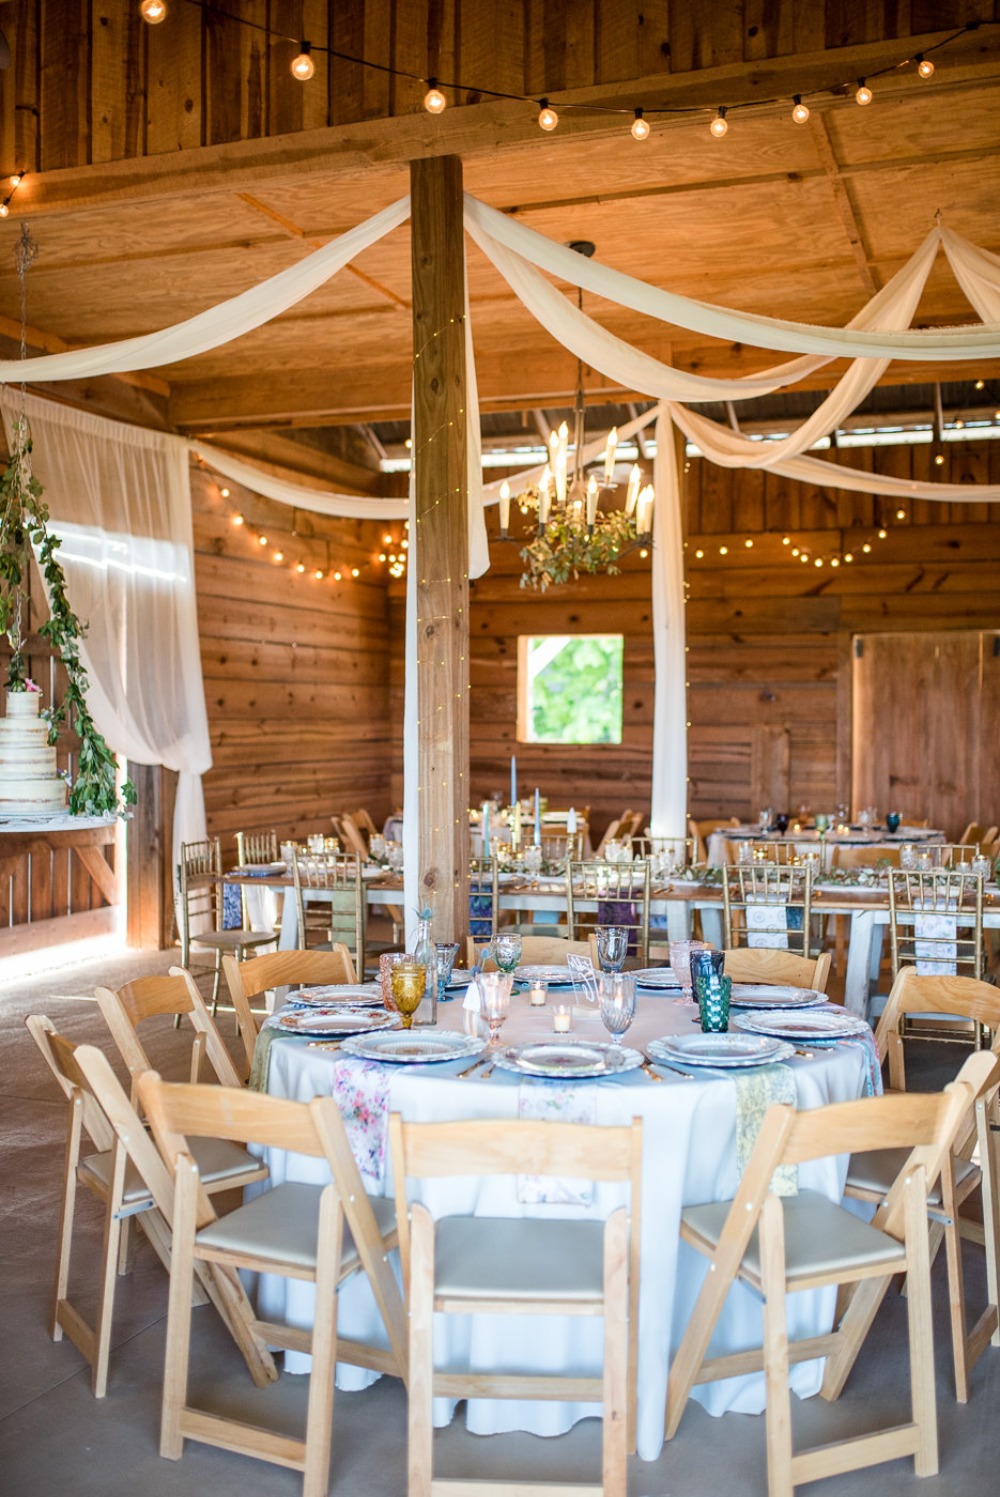 Rustic barn wedding reception